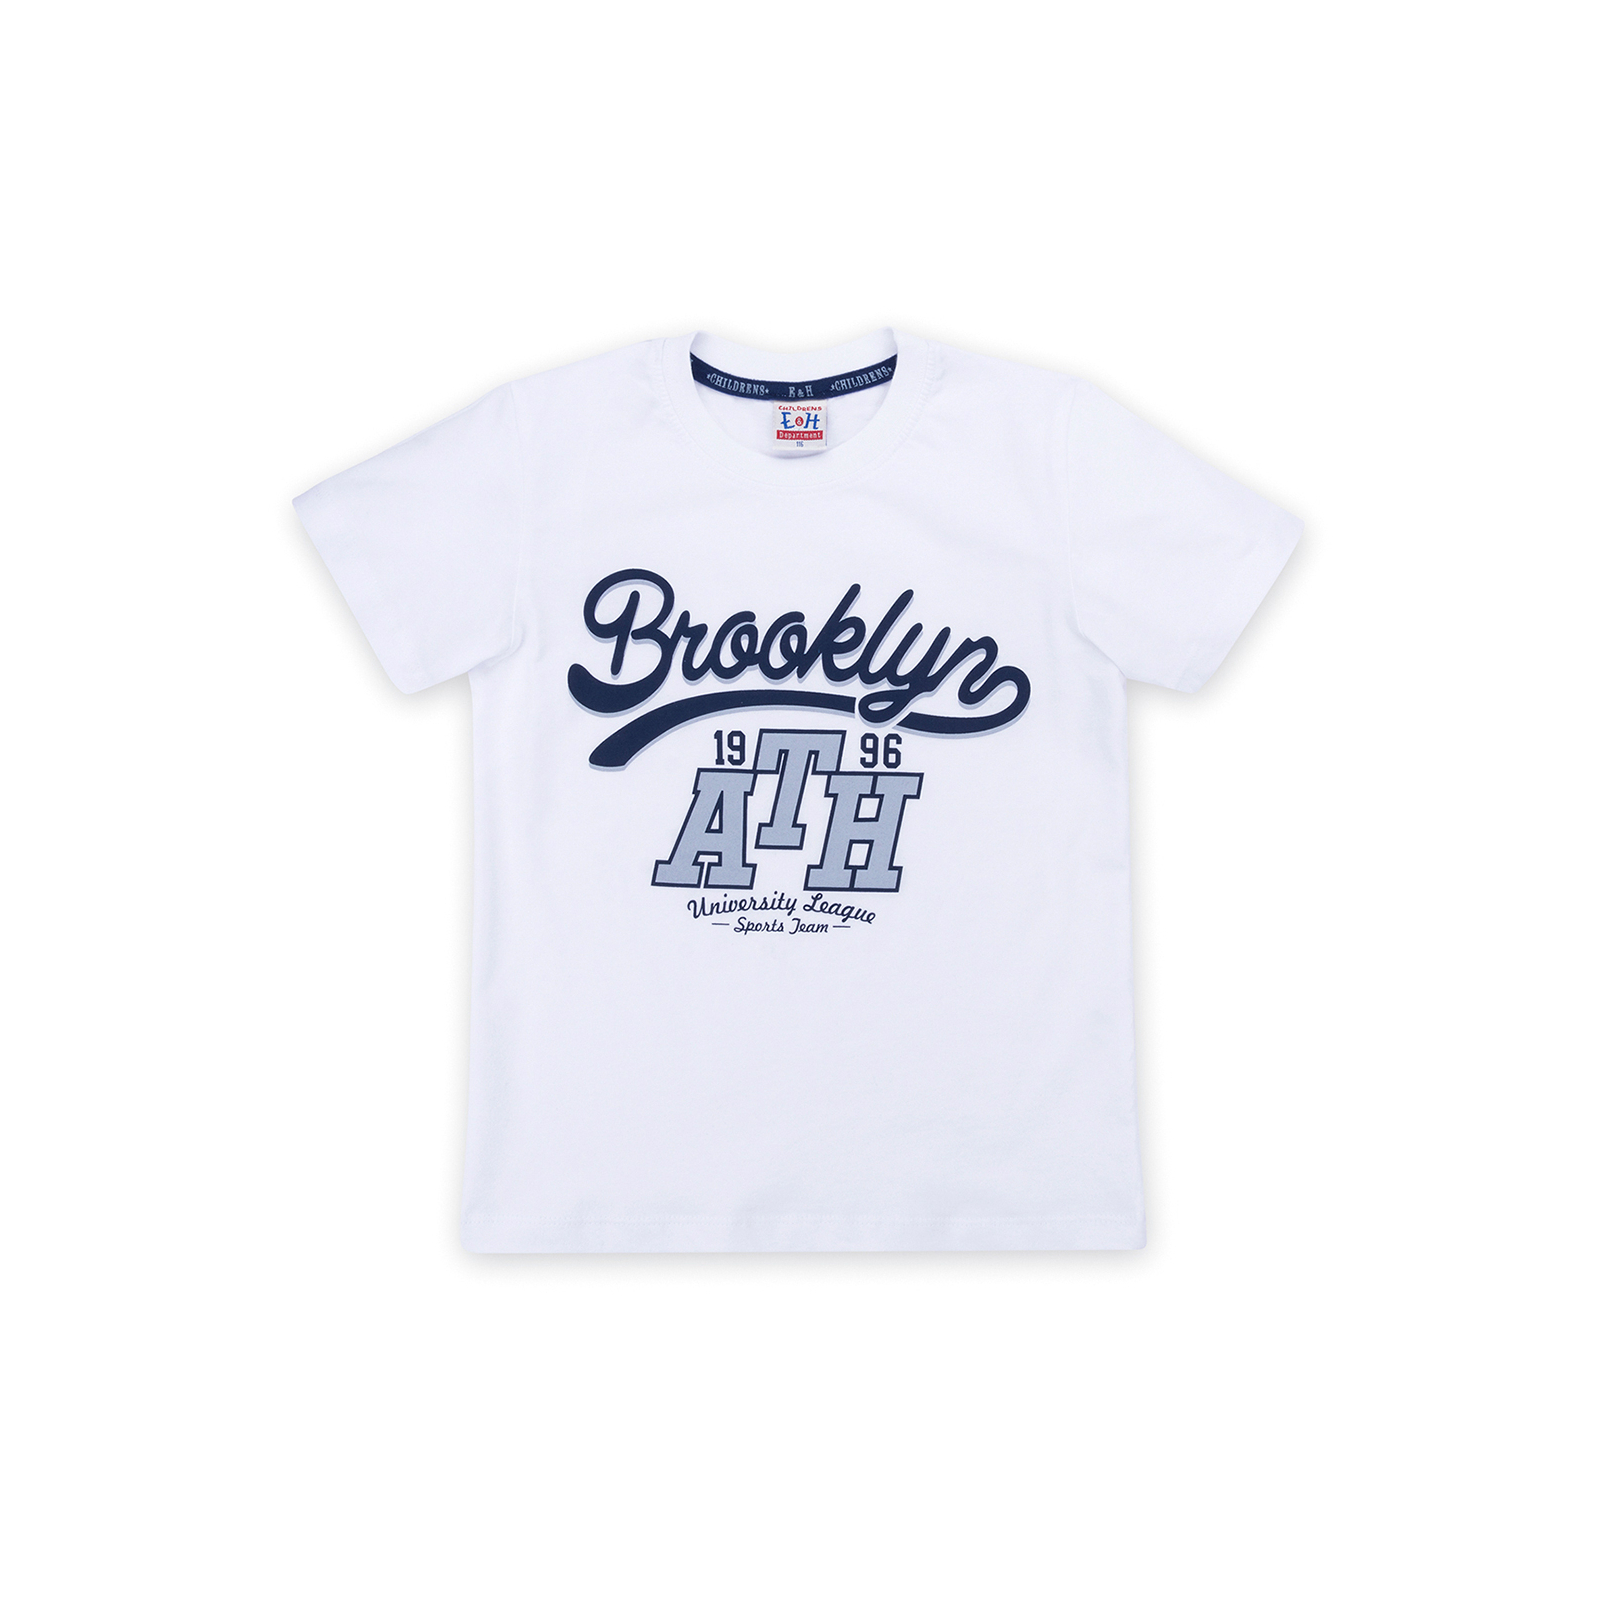 Набор детской одежды Breeze футболка "Brooklyn ATH" с шортами (8932-140B-white) изображение 2